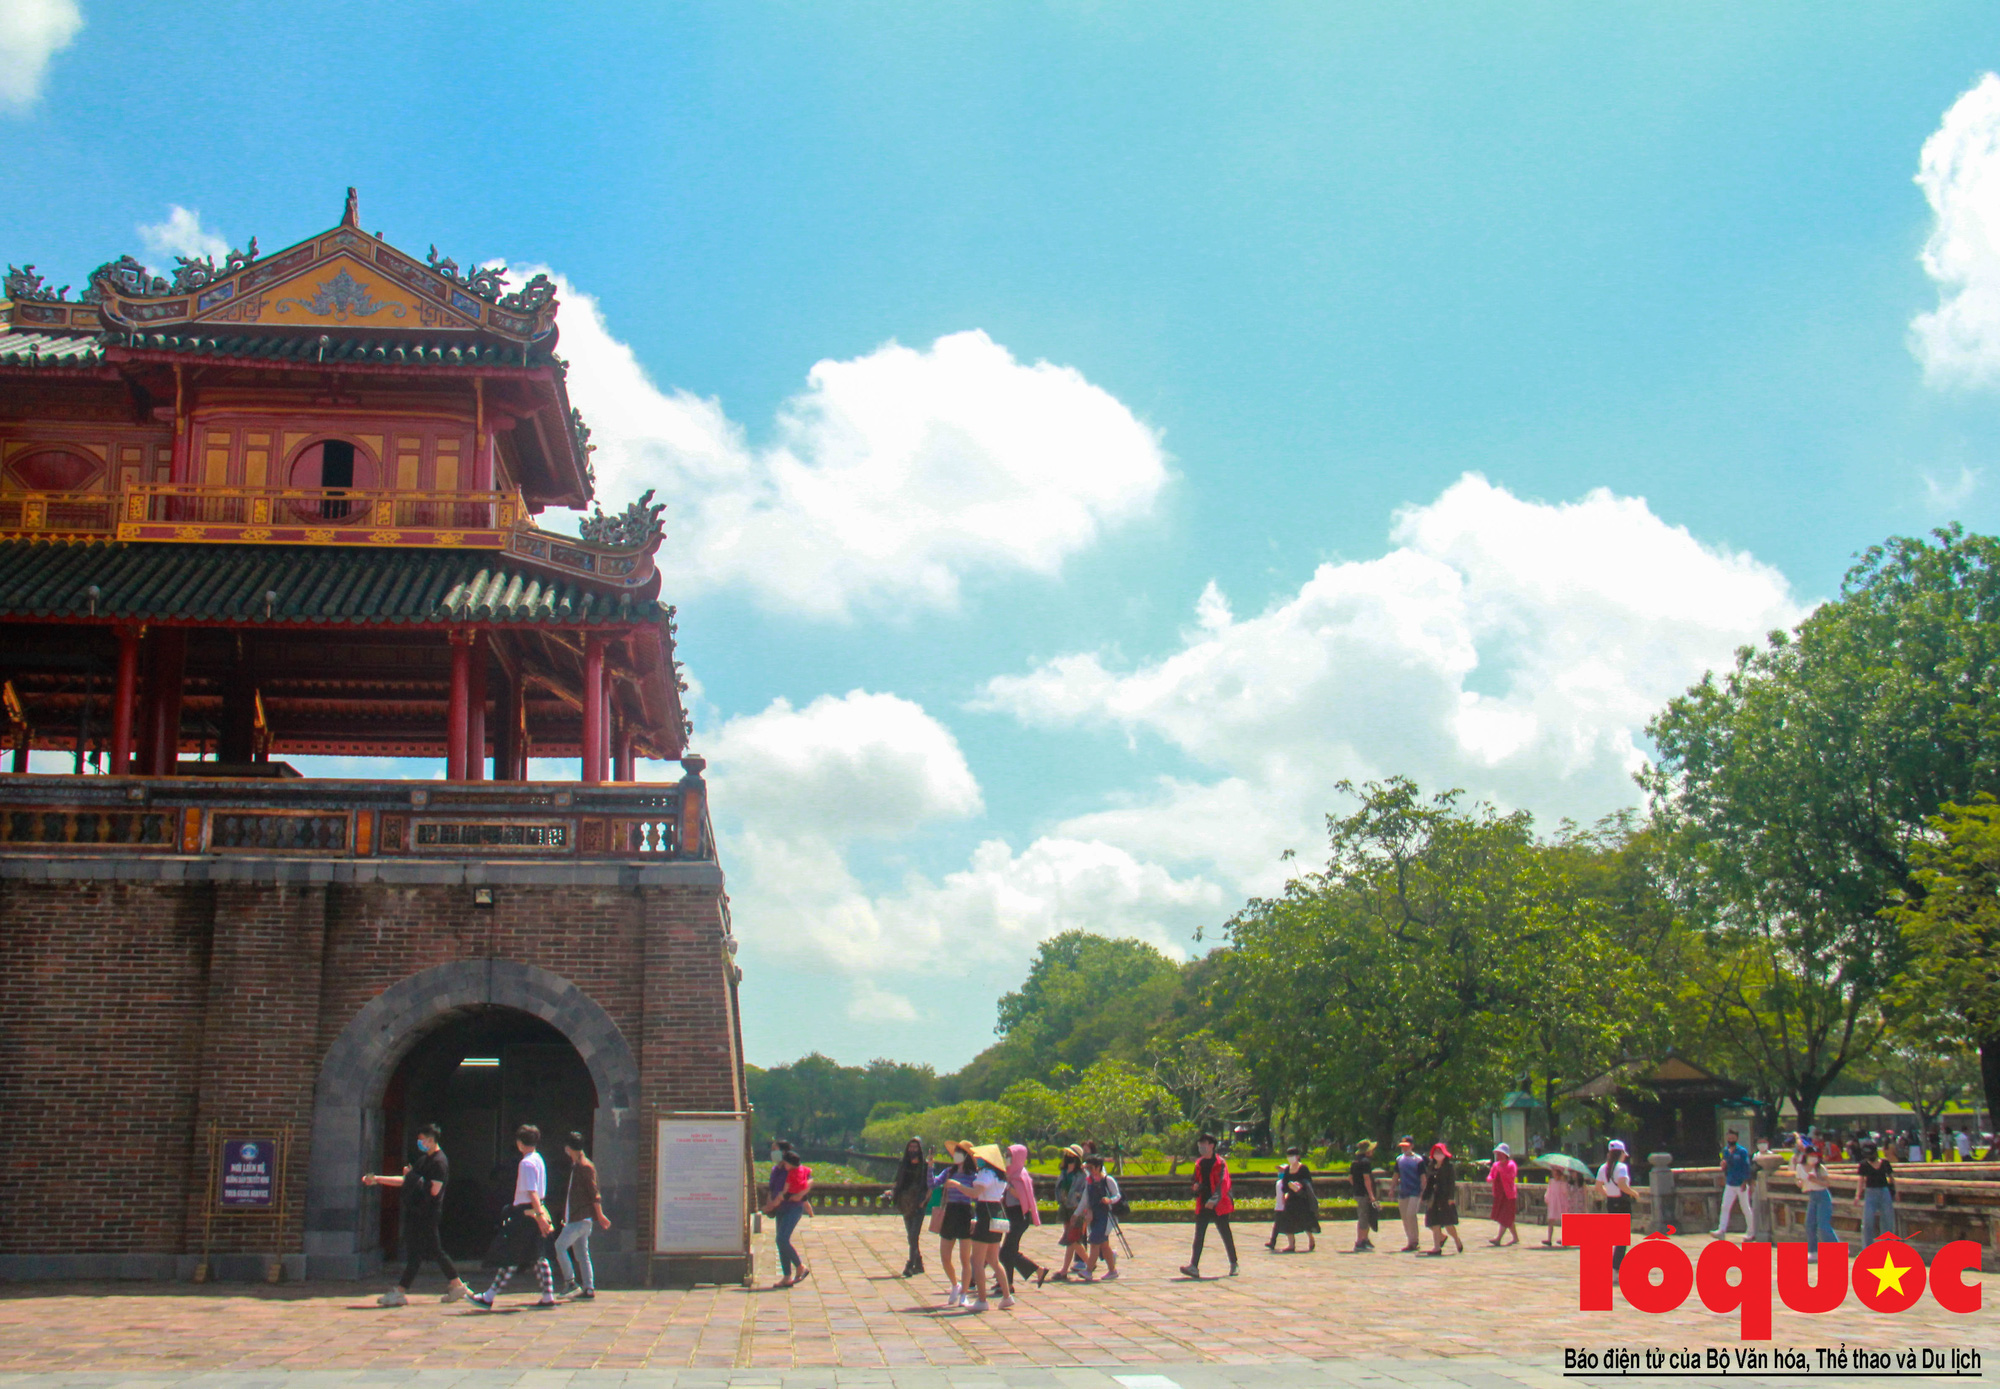 Thừa Thiên Huế, Đà Nẵng, Quảng Nam – Ba địa phương, một điểm đến du lịch an toàn và mến khách   - Ảnh 1.